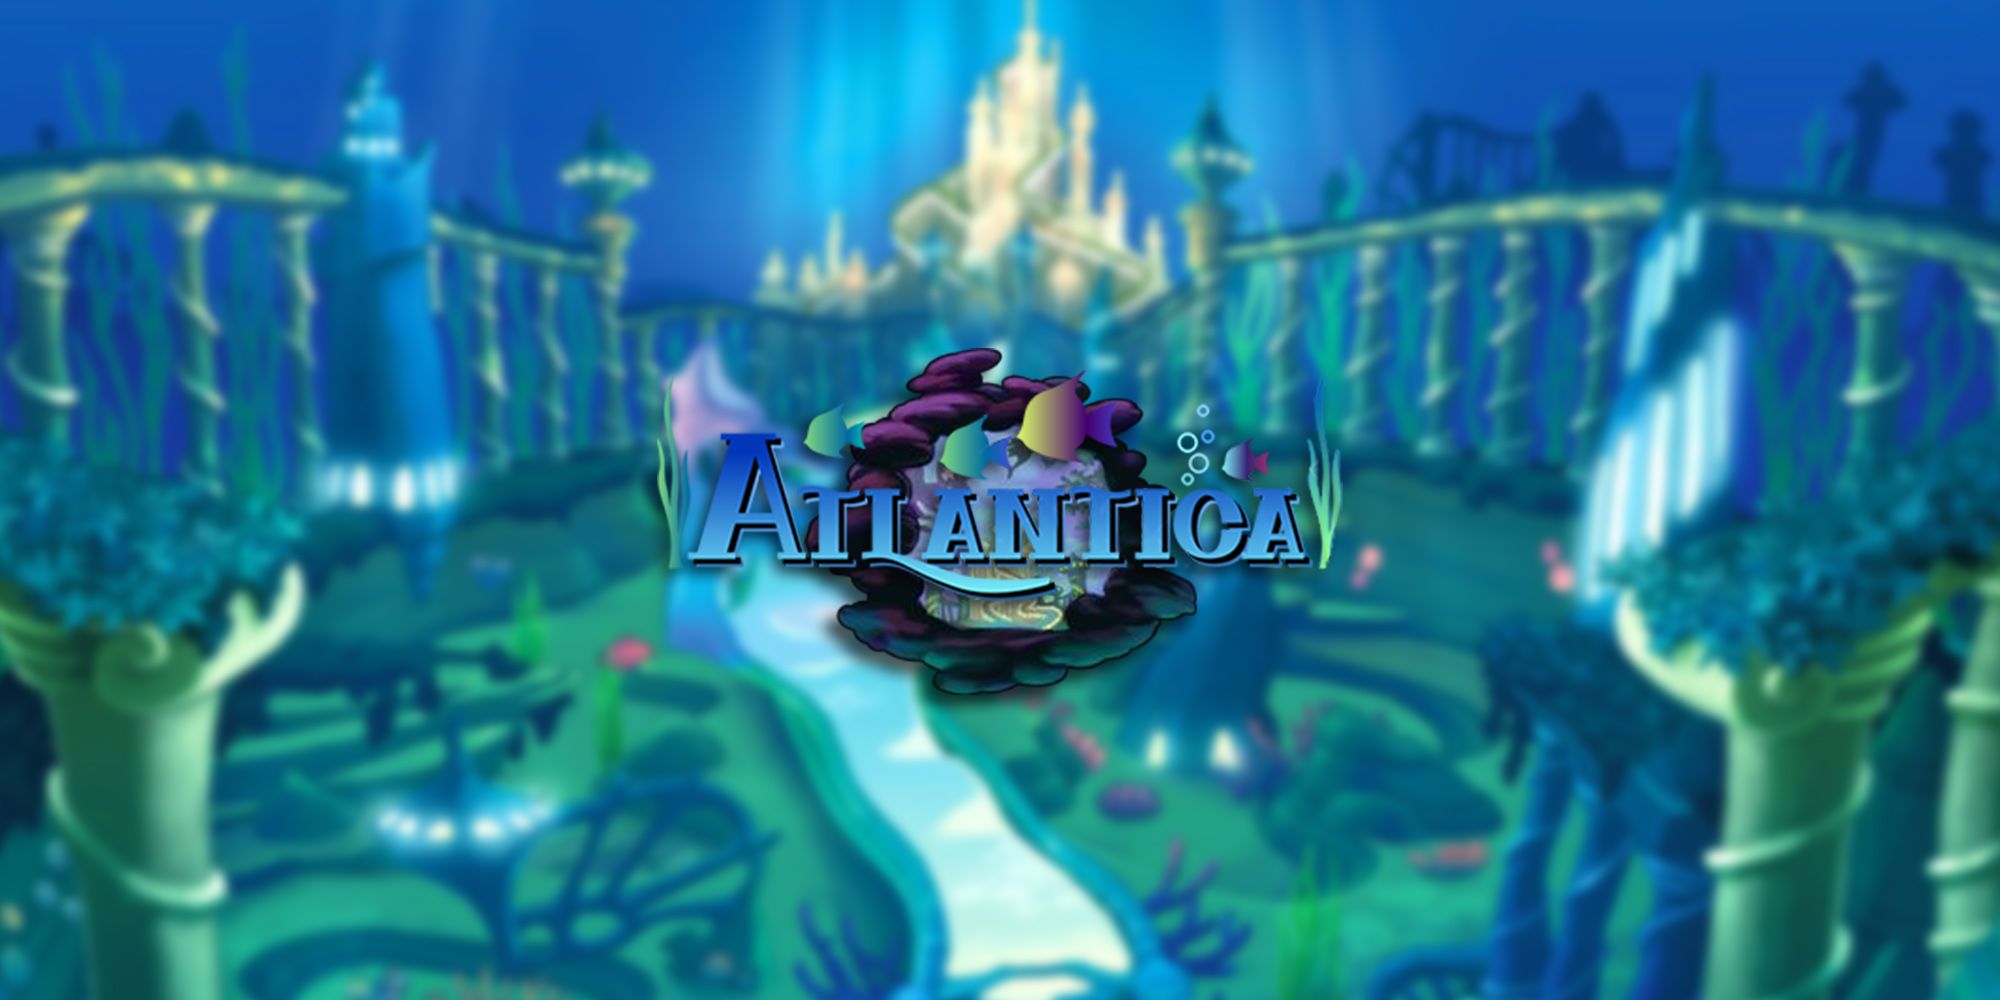 Atlantica in Kingdom Hearts 2